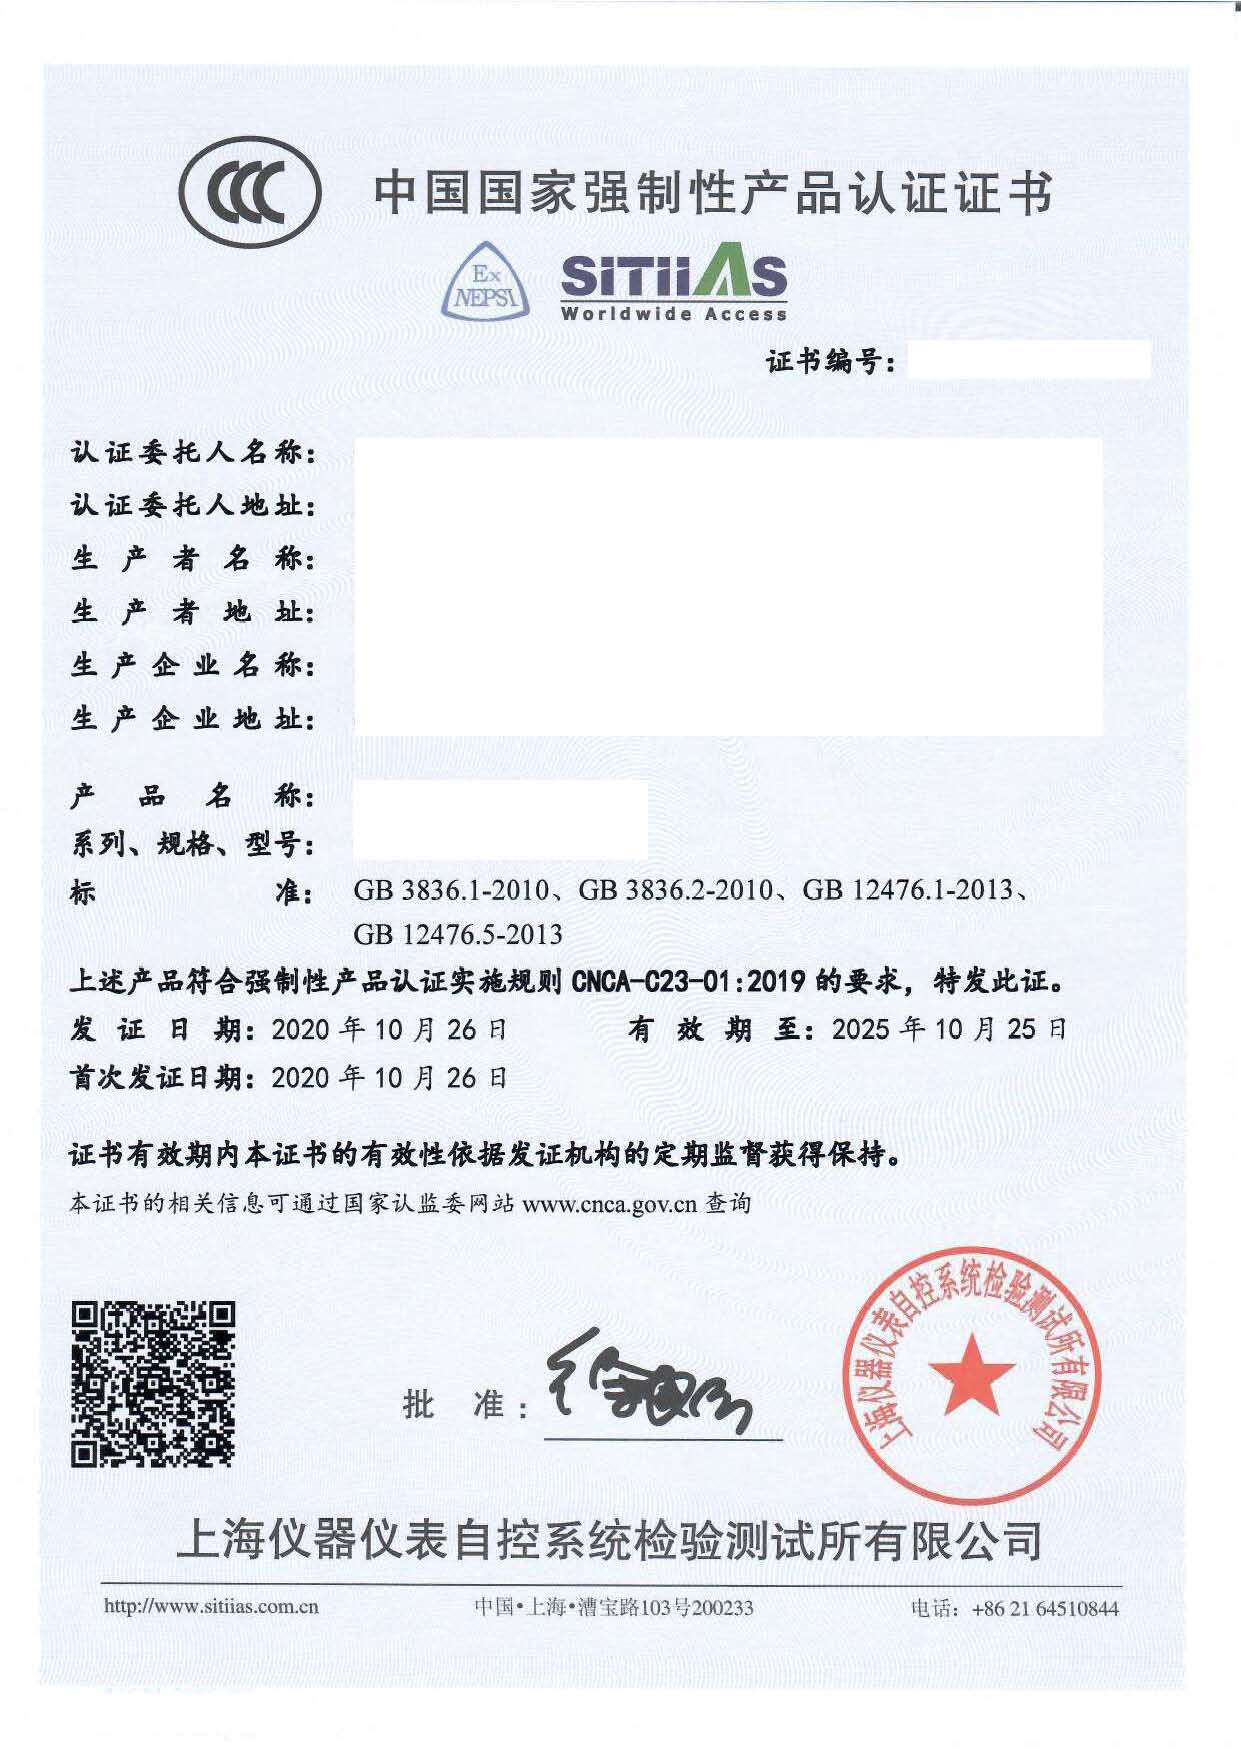 上海仪器仪表自控系统测试所有限公司-CCC.jpg